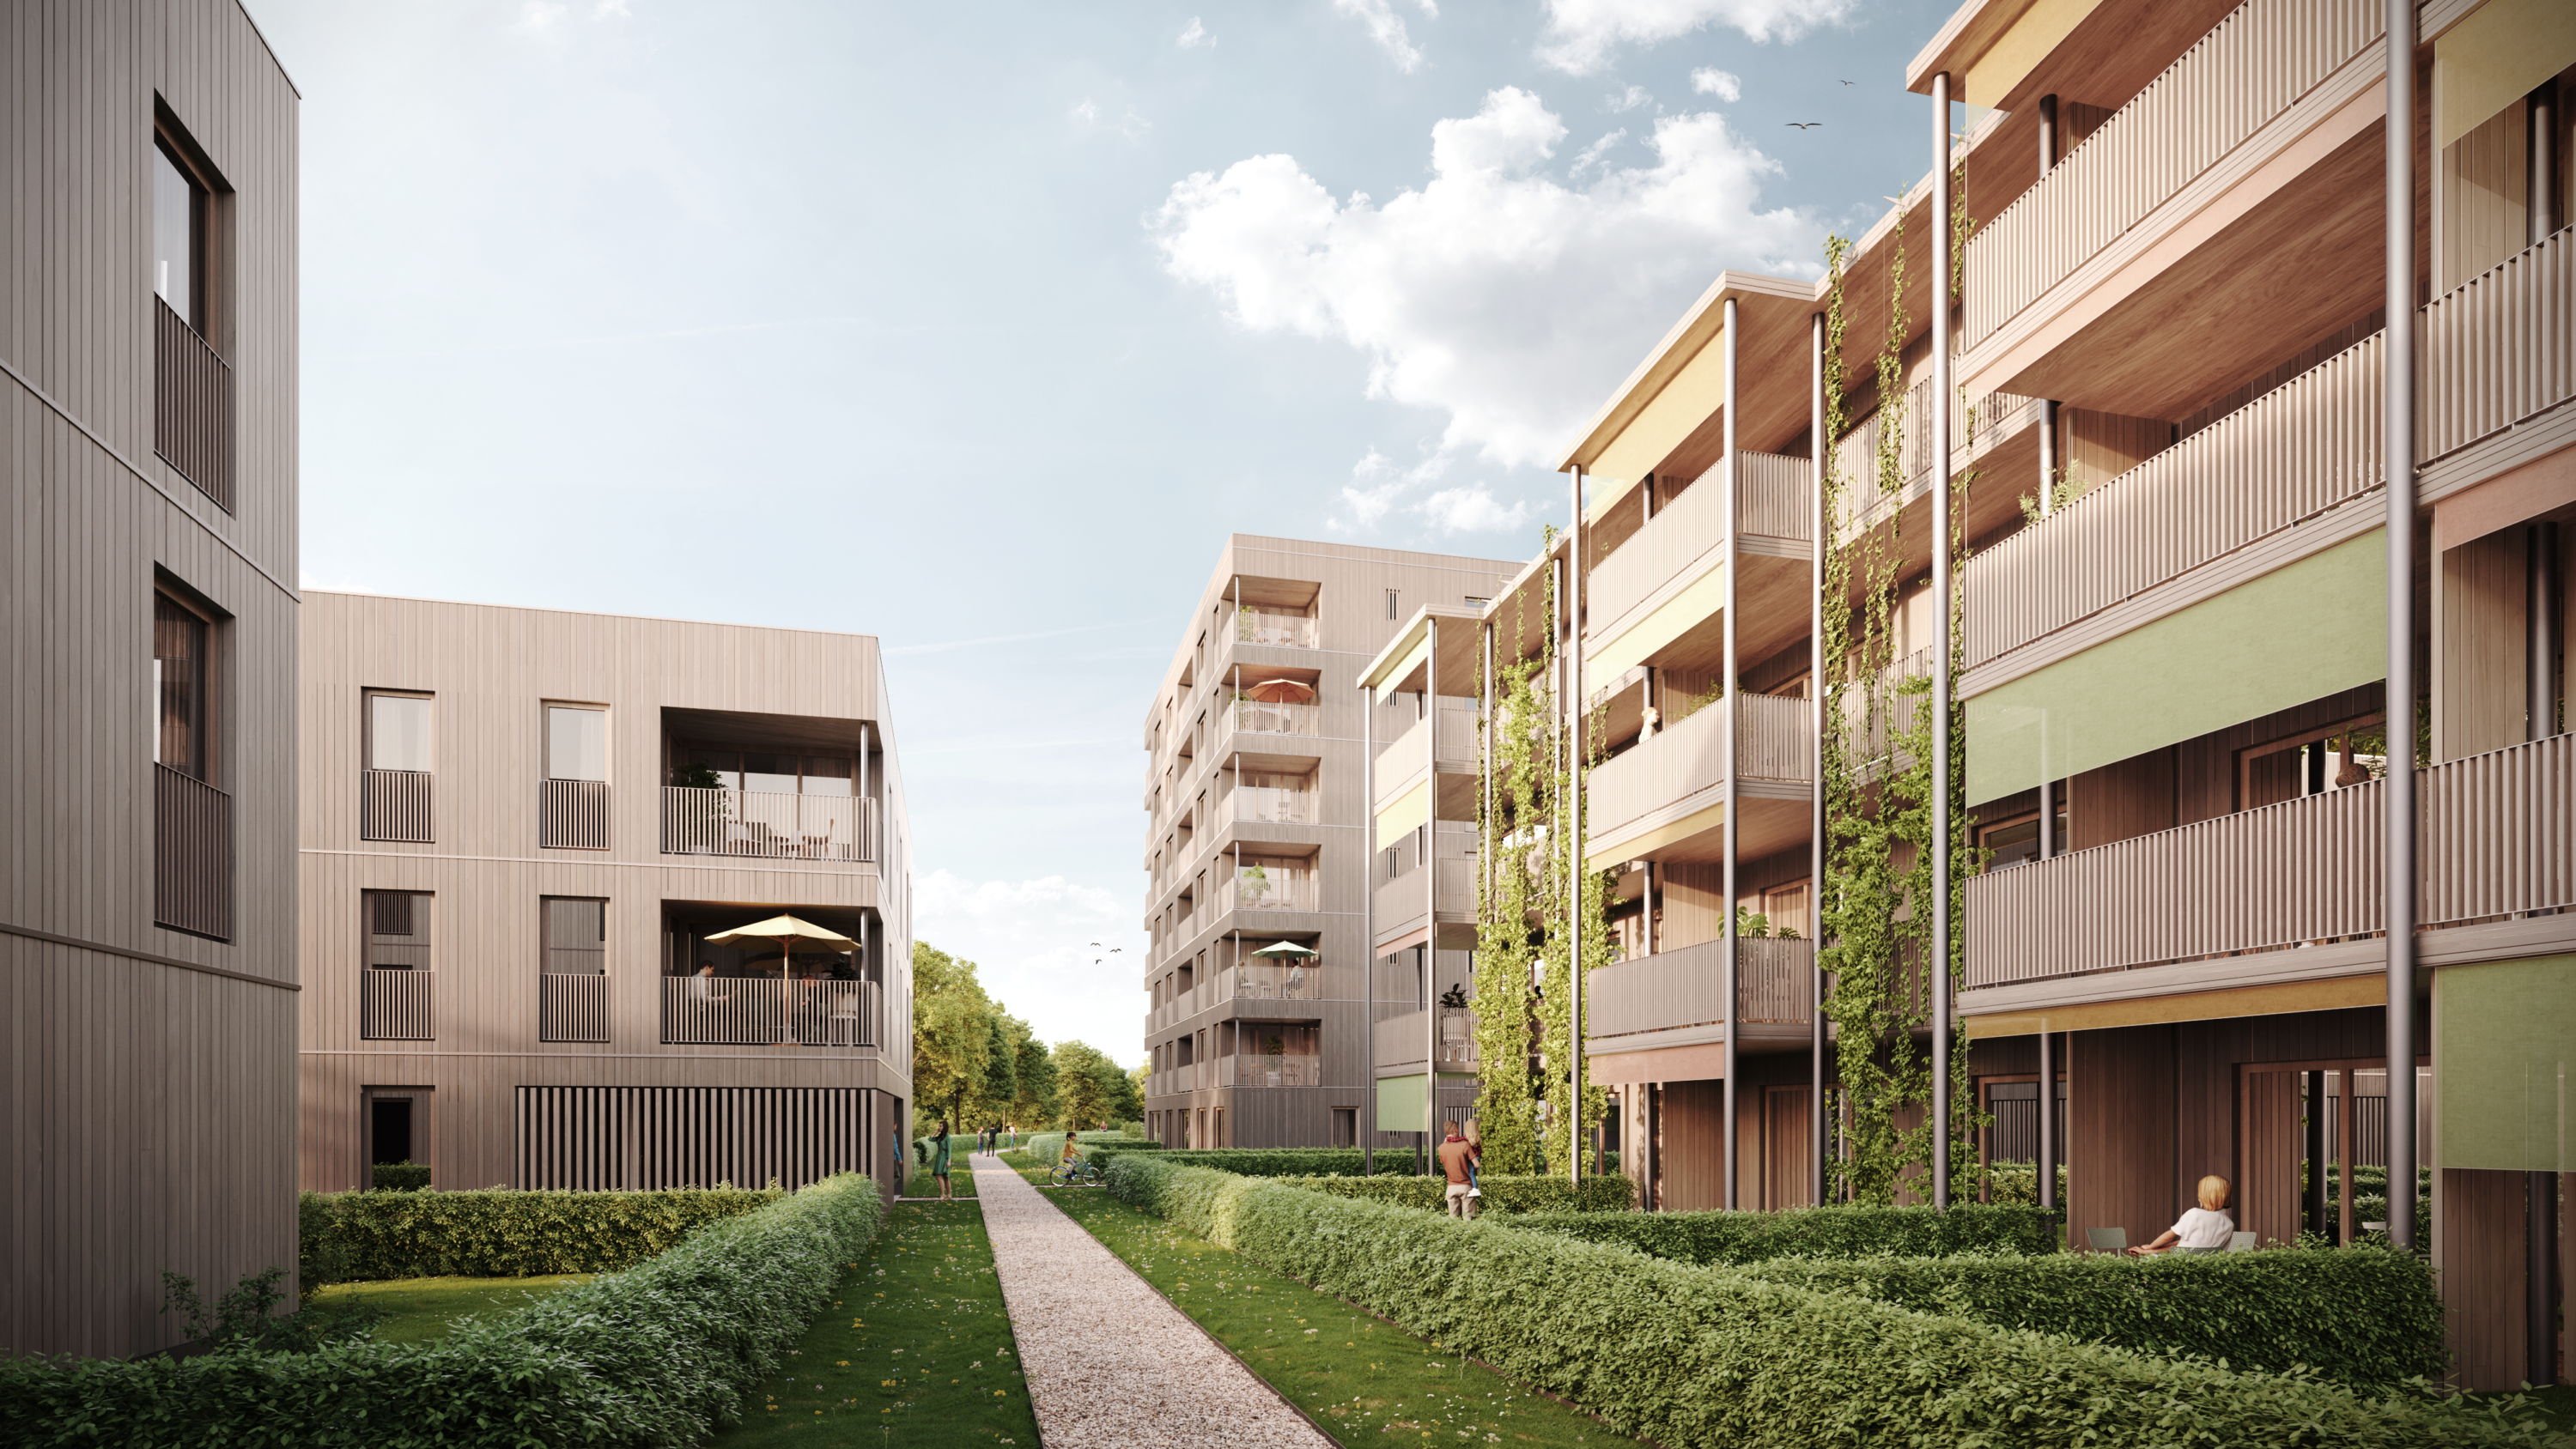 Wohnbebauung_Wangen im Allgäu_Landesgartenschau_Architektur_Rendering_Herrmann-Bosch-Architekten